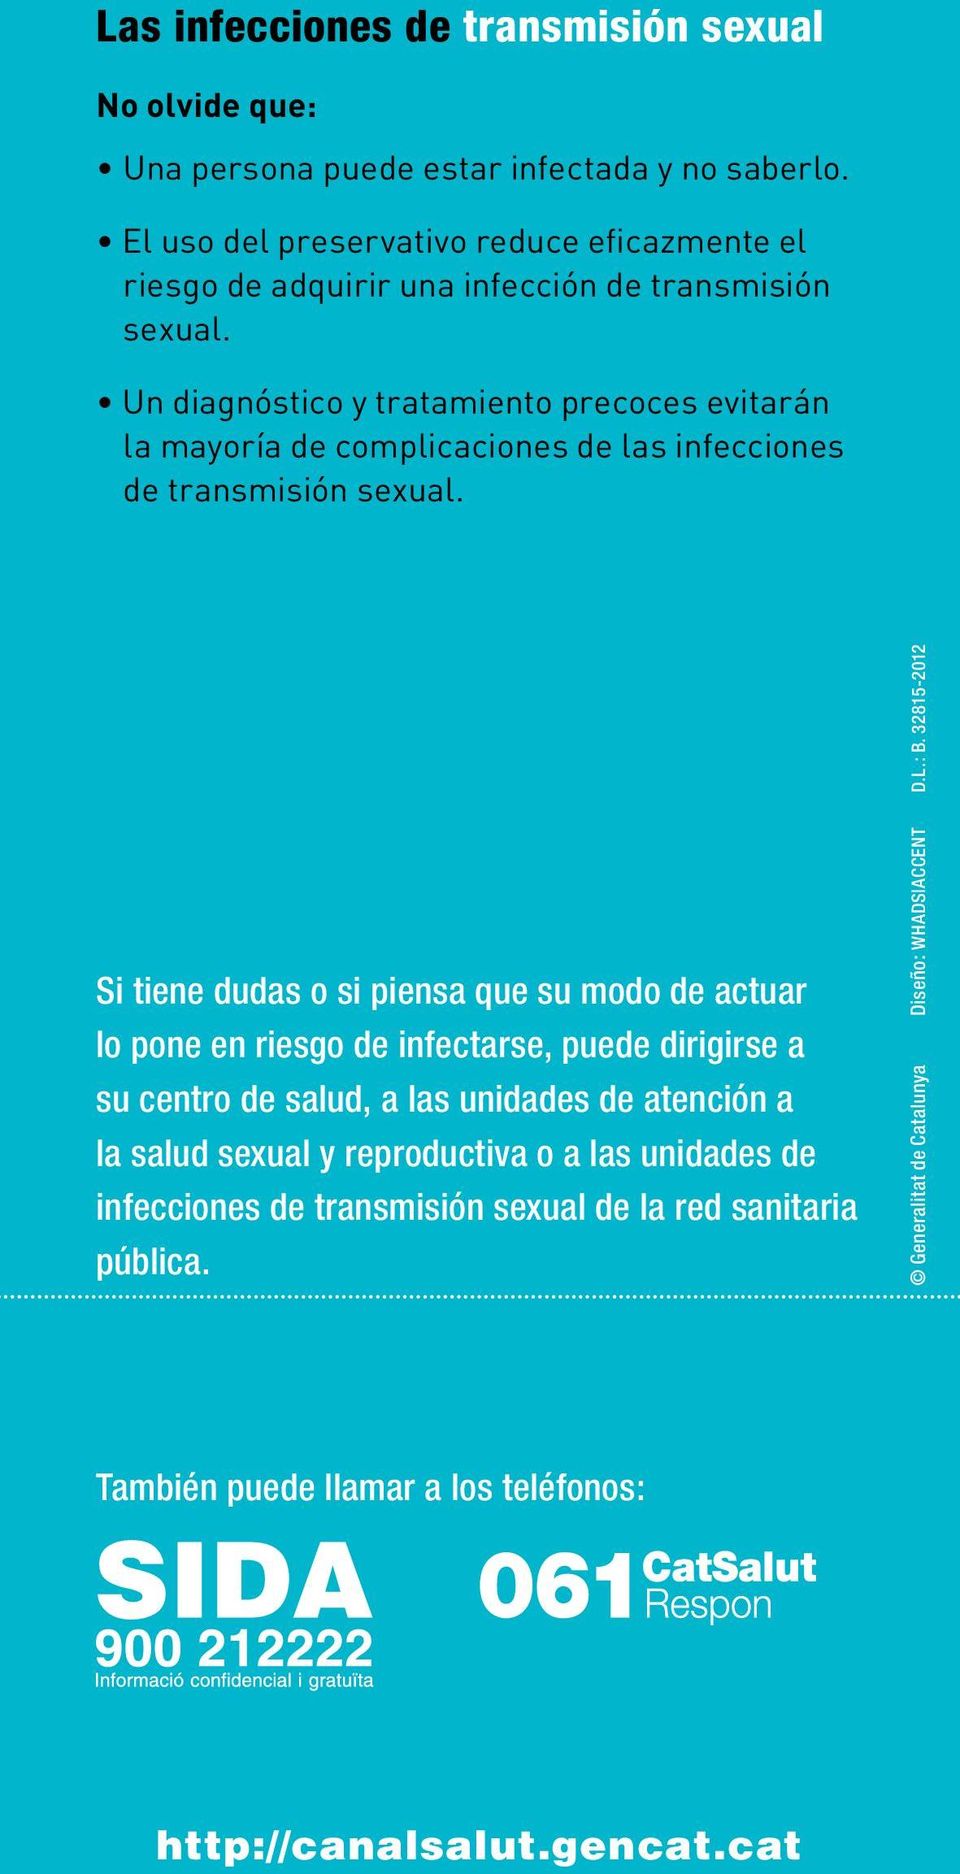 Un diagnóstico y tratamiento precoces evitarán la mayoría de complicaciones de las infecciones de transmisión sexual.